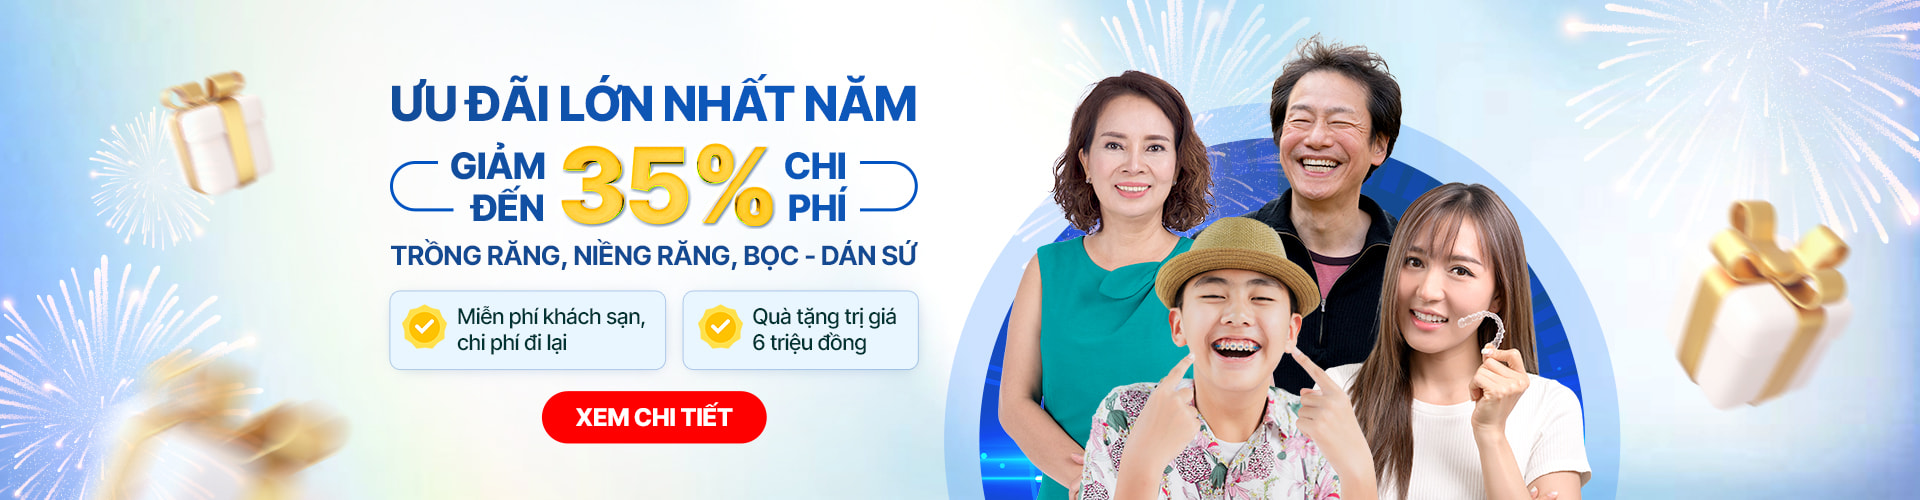 Việt Kiều về nước làm răng